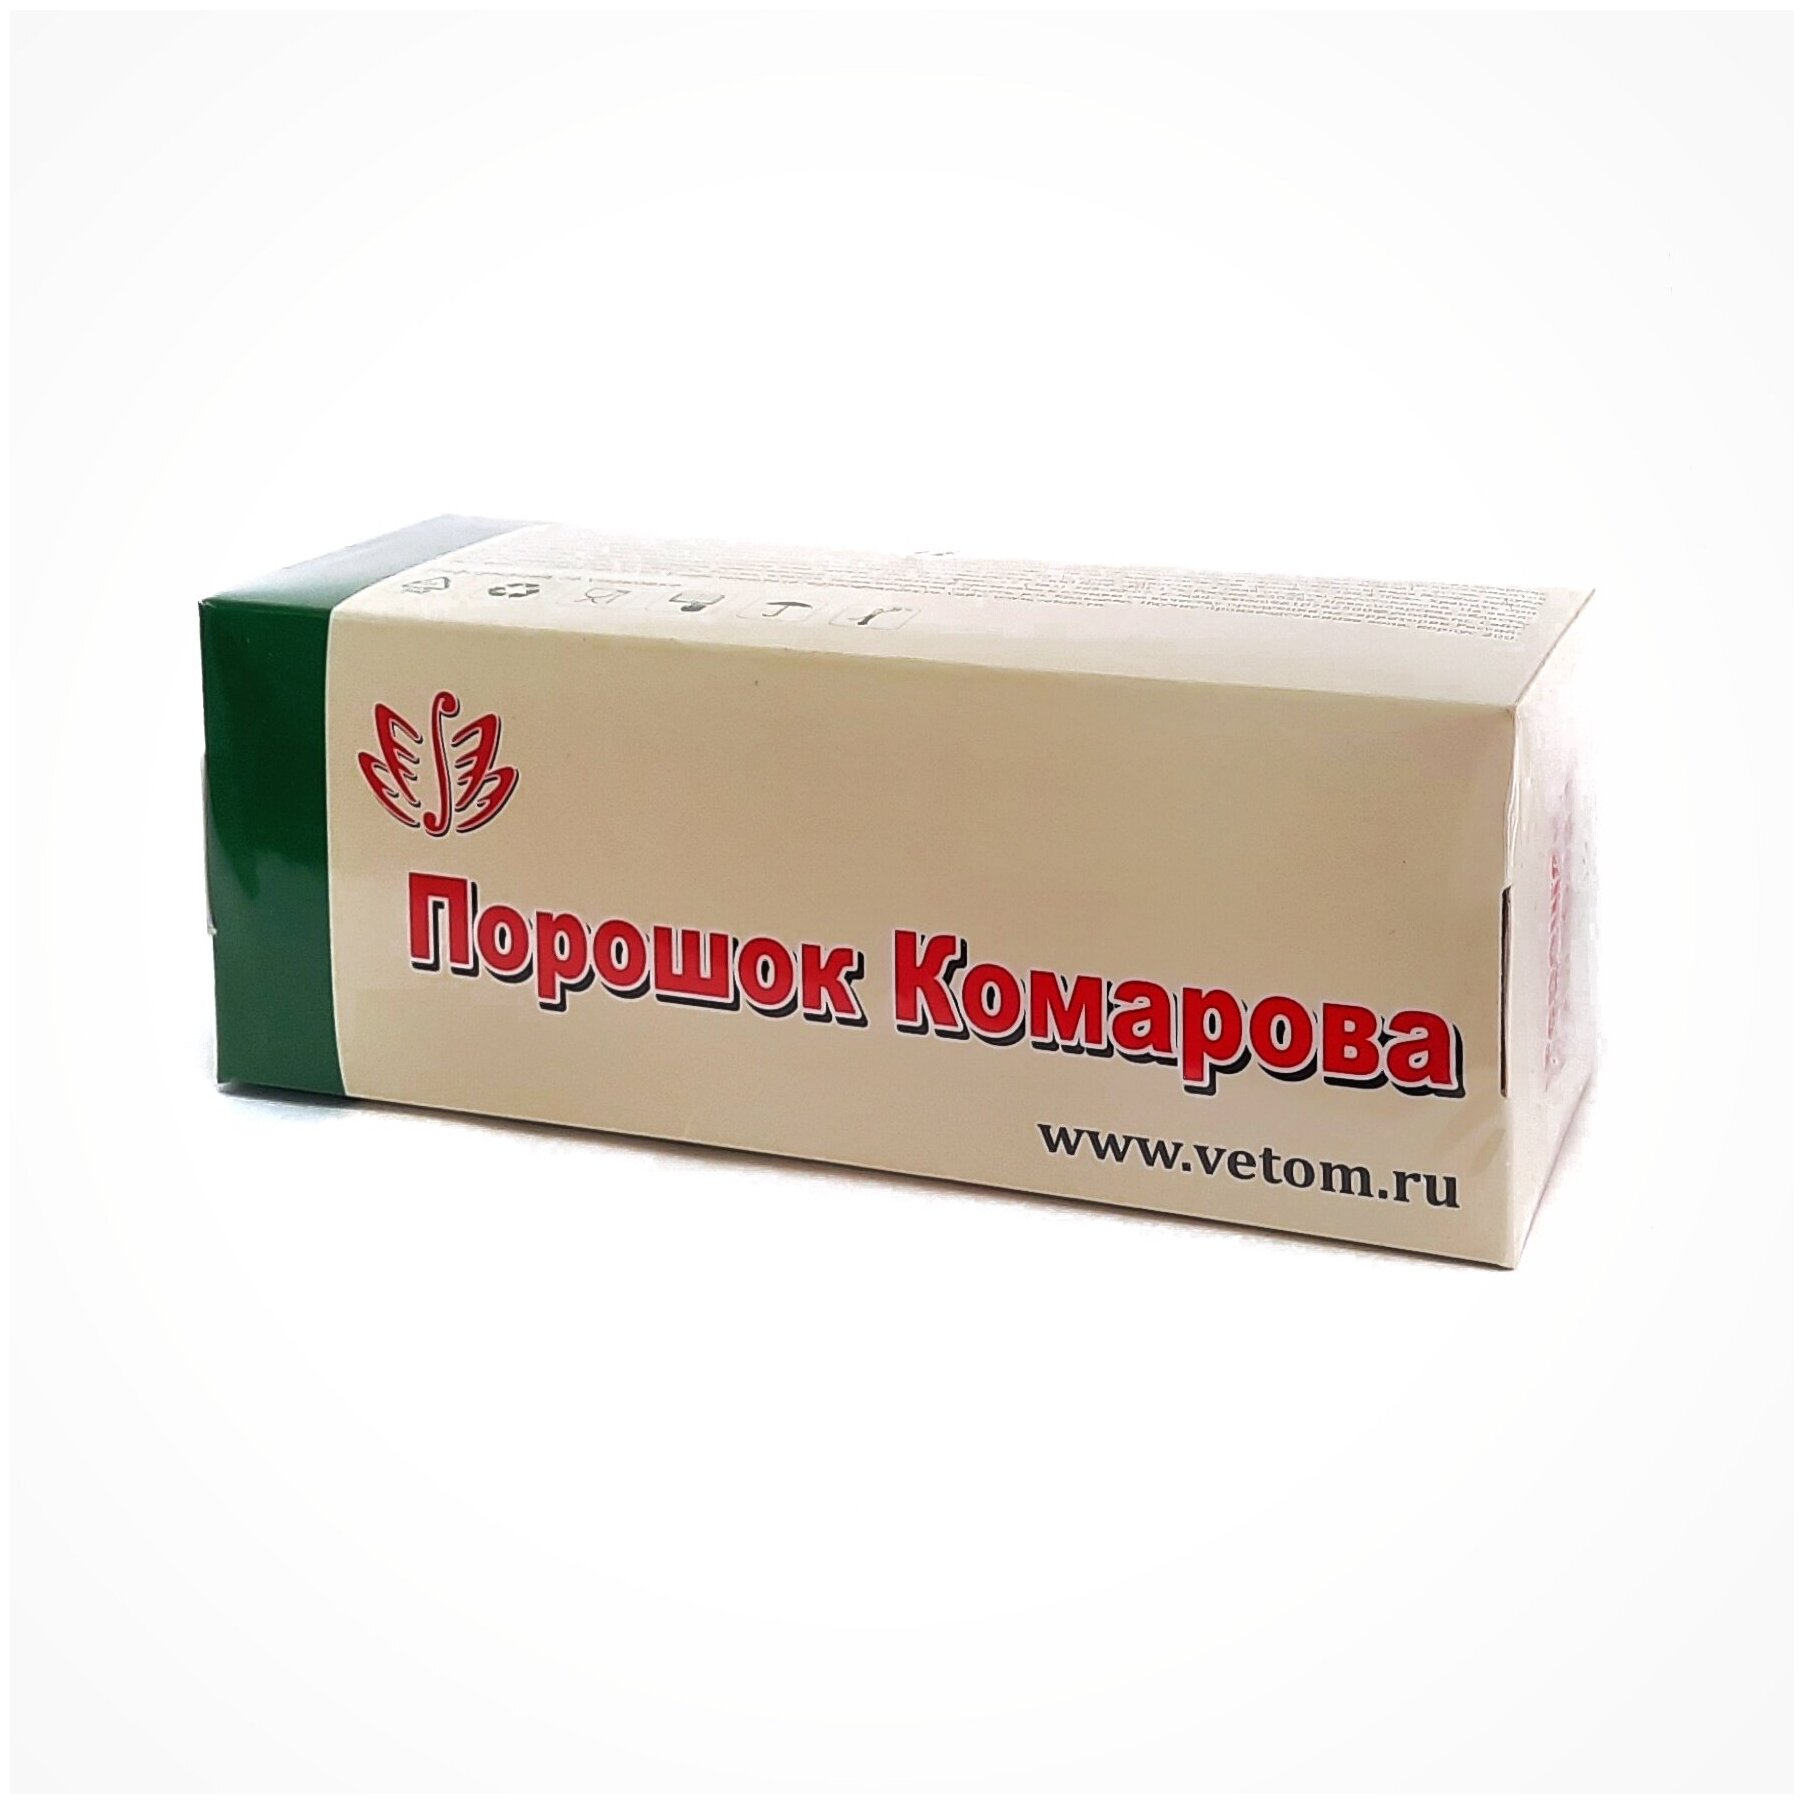 Порошок Комарова, в коробке 40 шт пакетов по 2,5 г